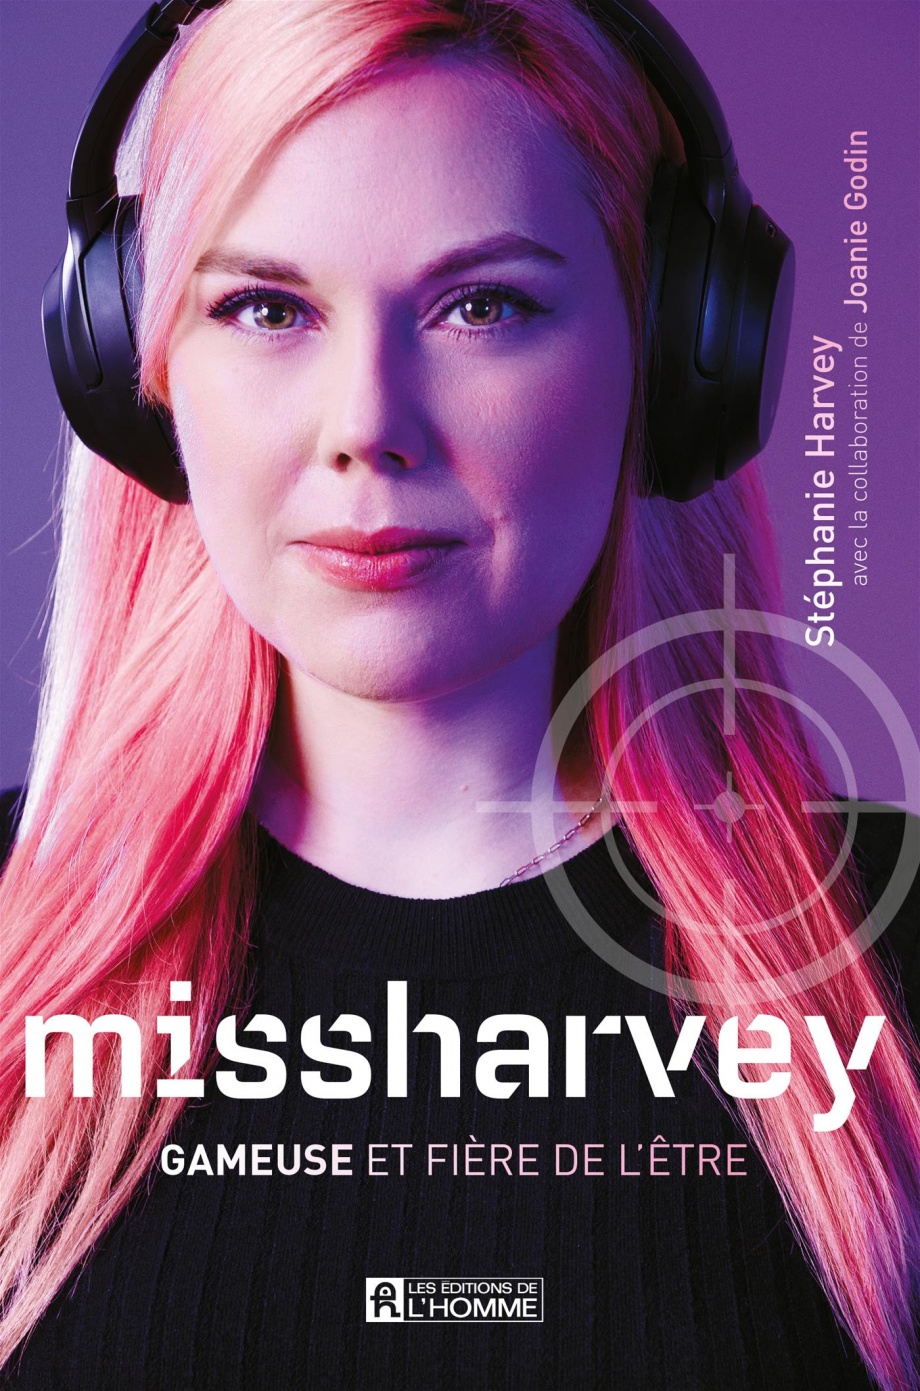 missharvey: Gameuse et fière de l'être de Stéphanie Harvey